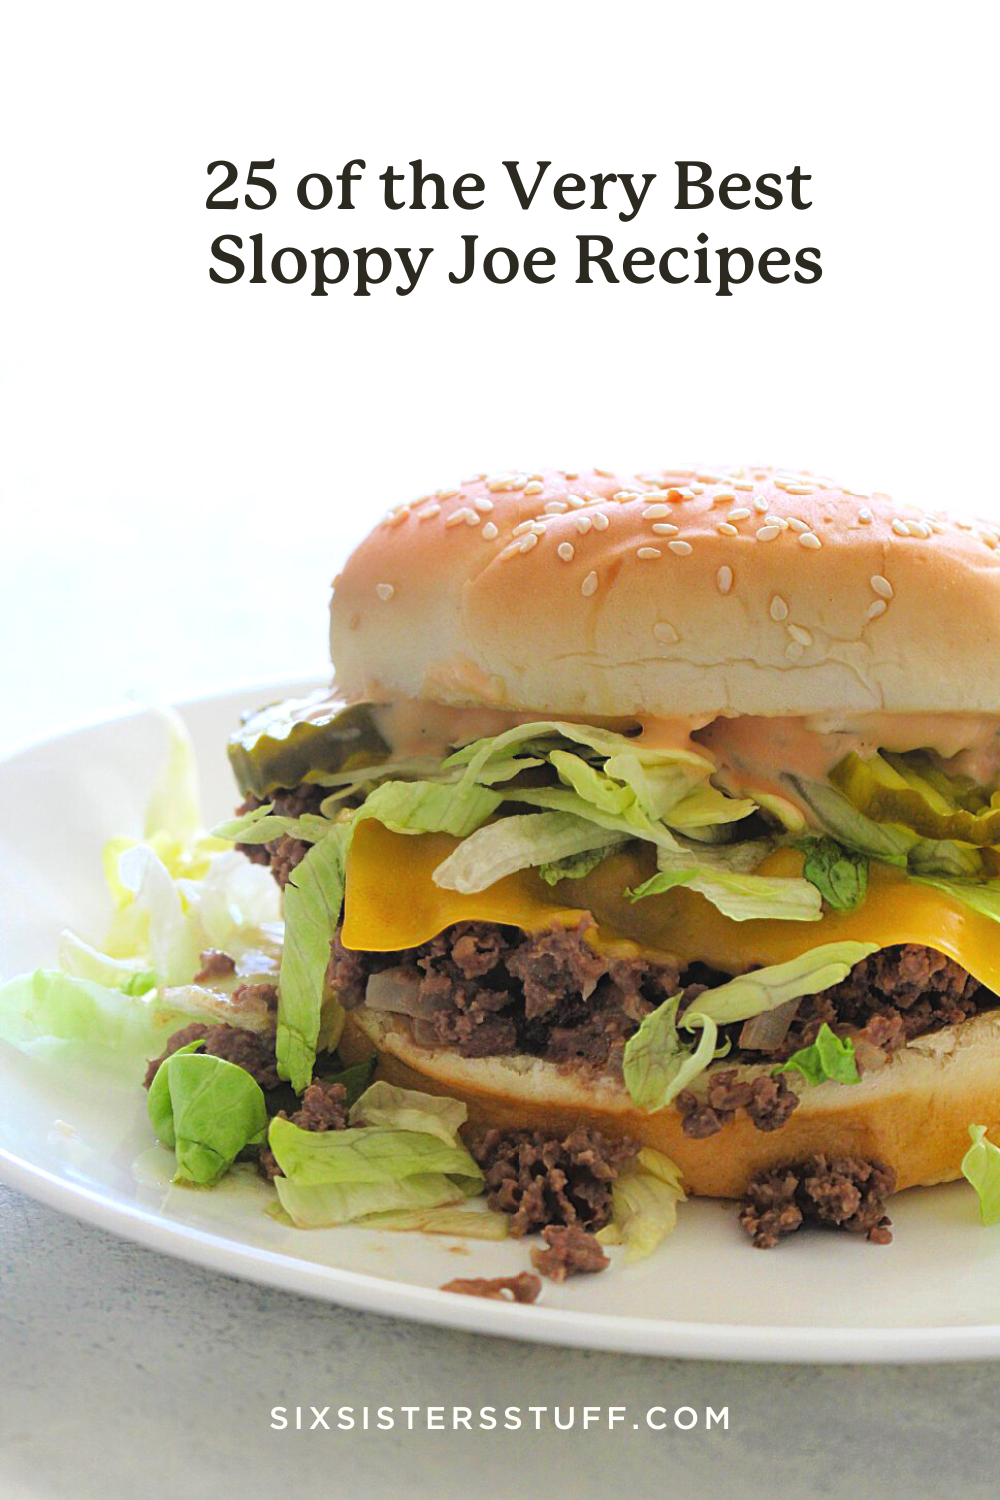 25 of the Very Best Sloppy Joe Recipes